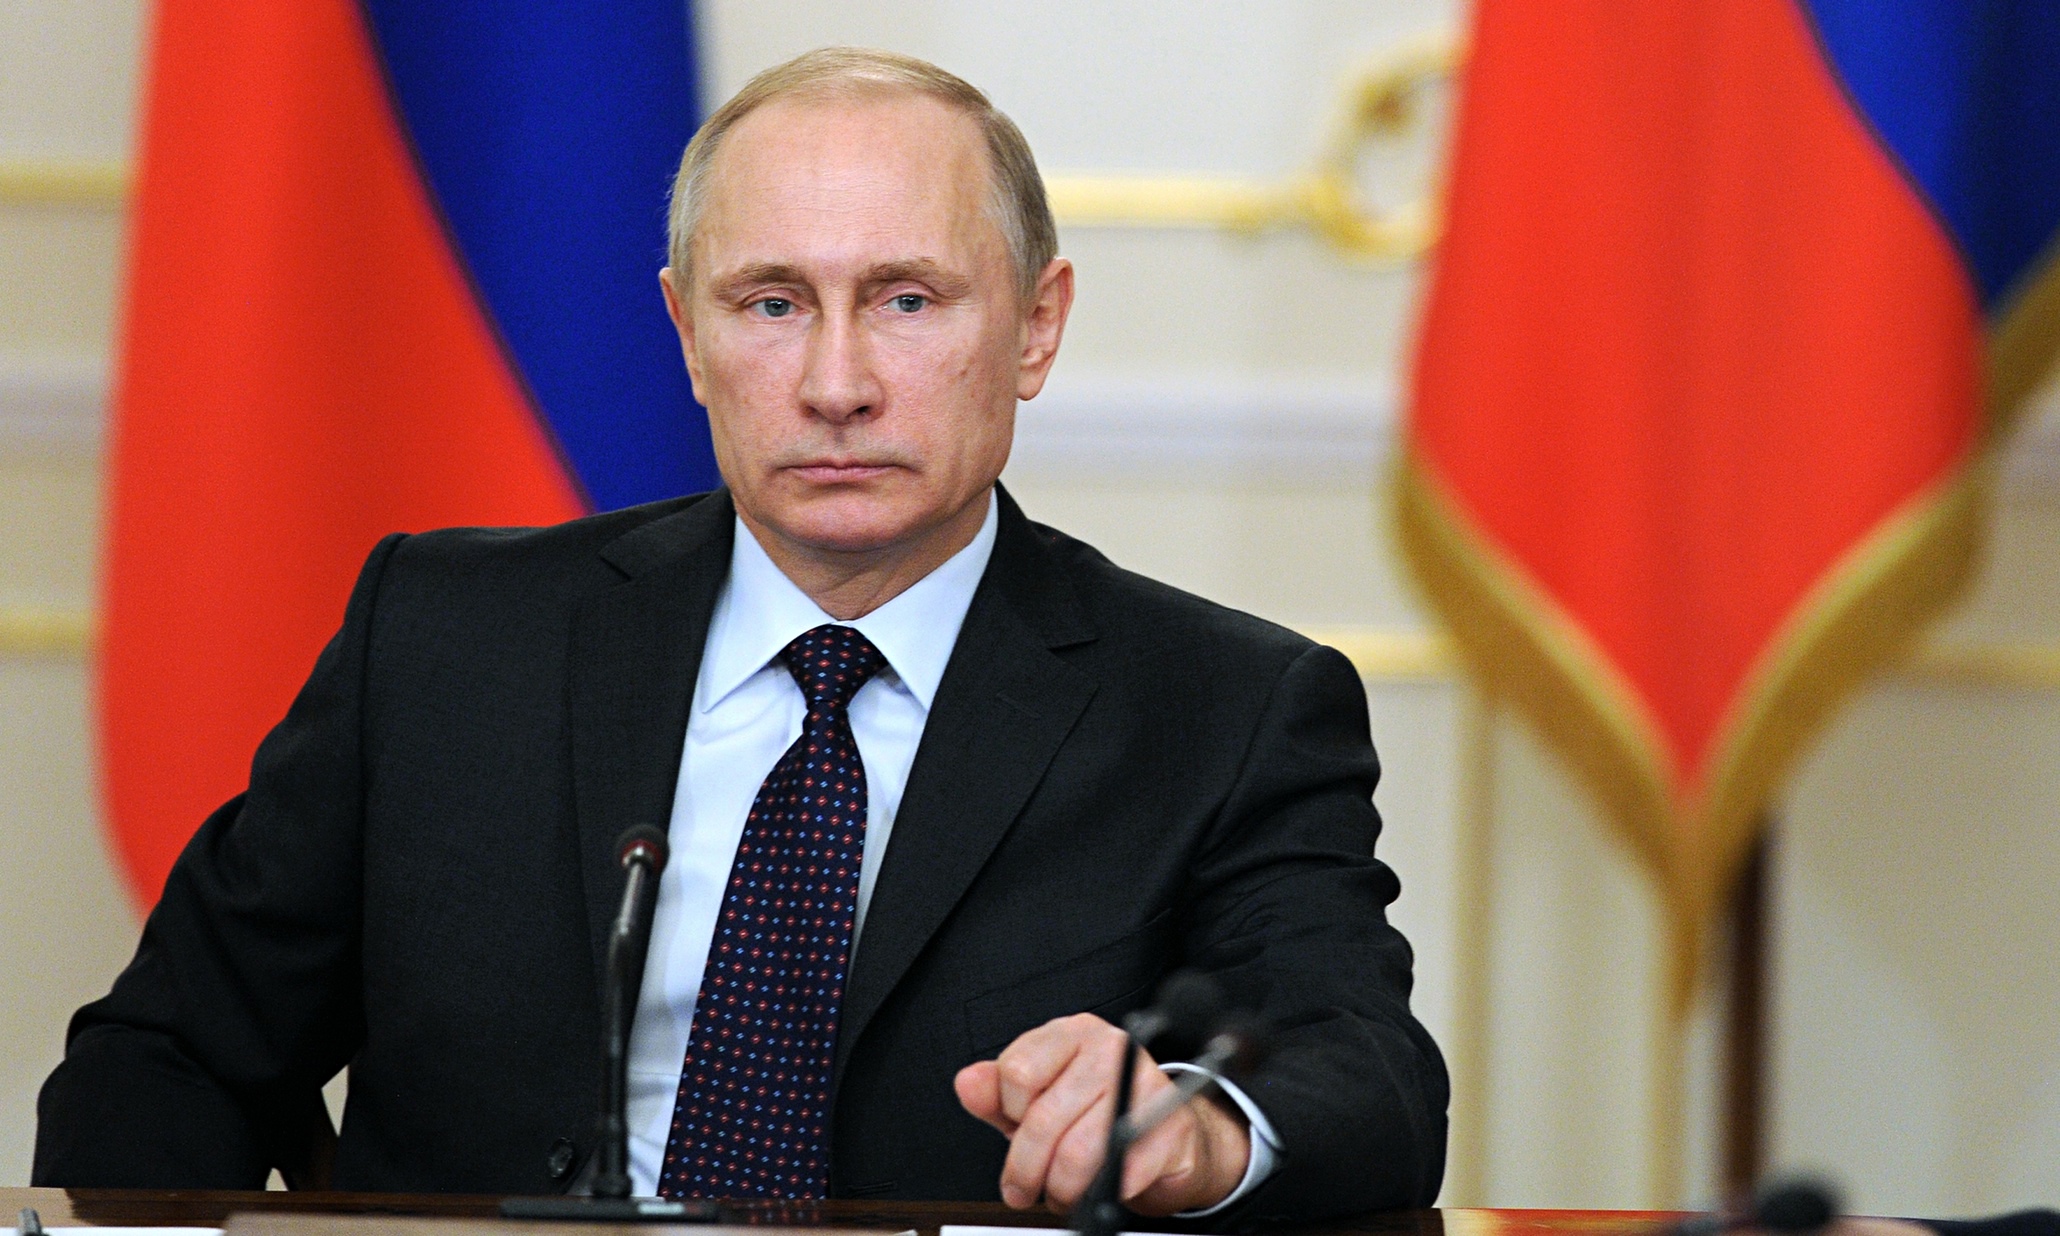 Β.Πούτιν: «Η Δύση καταστρέφει το ίδιο το οικονομικό σύστημα που δημιούργησε»